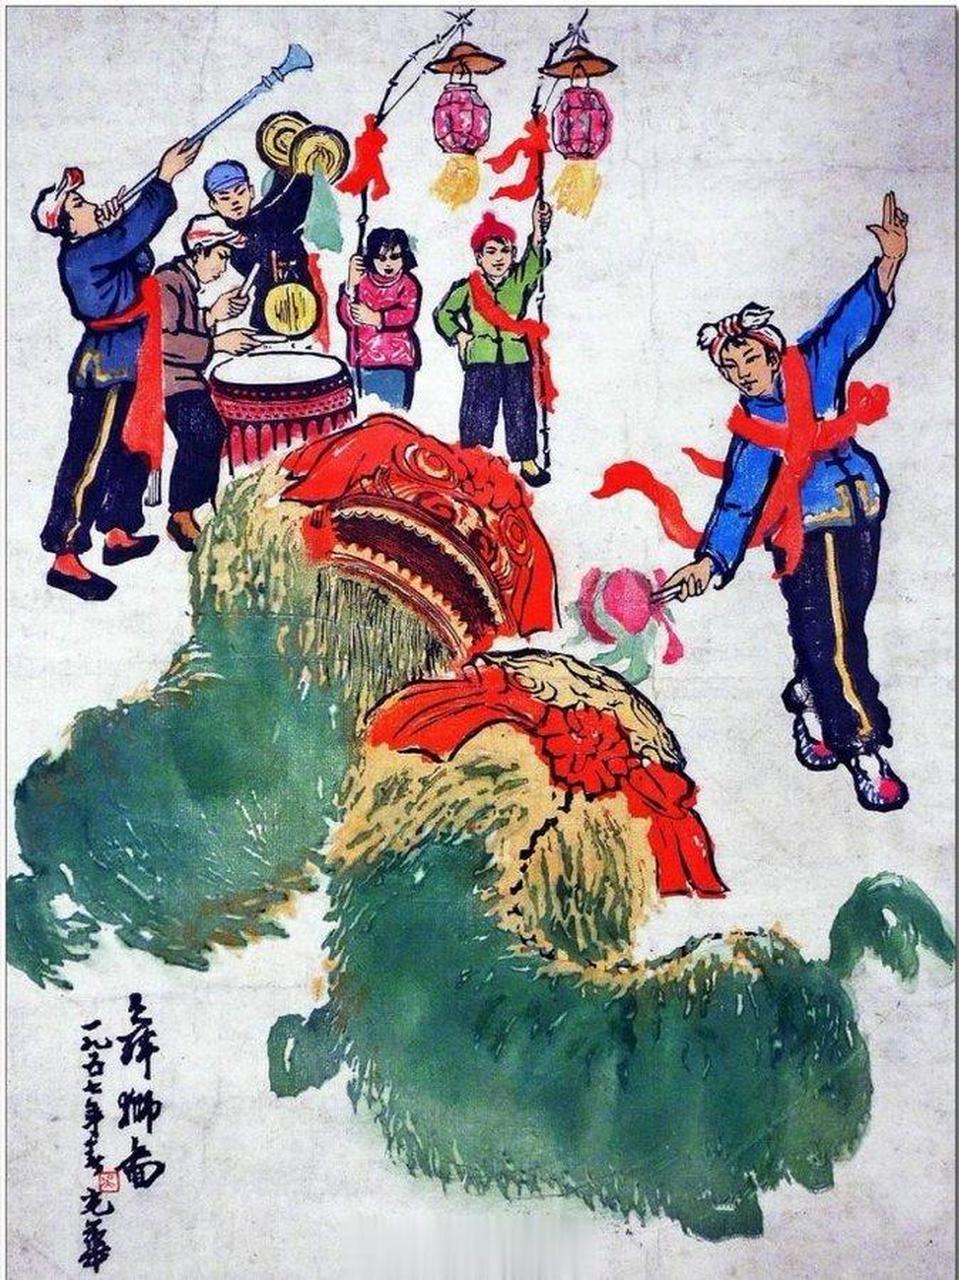 《舞狮图》(吴光华 1957)——劳动者之歌